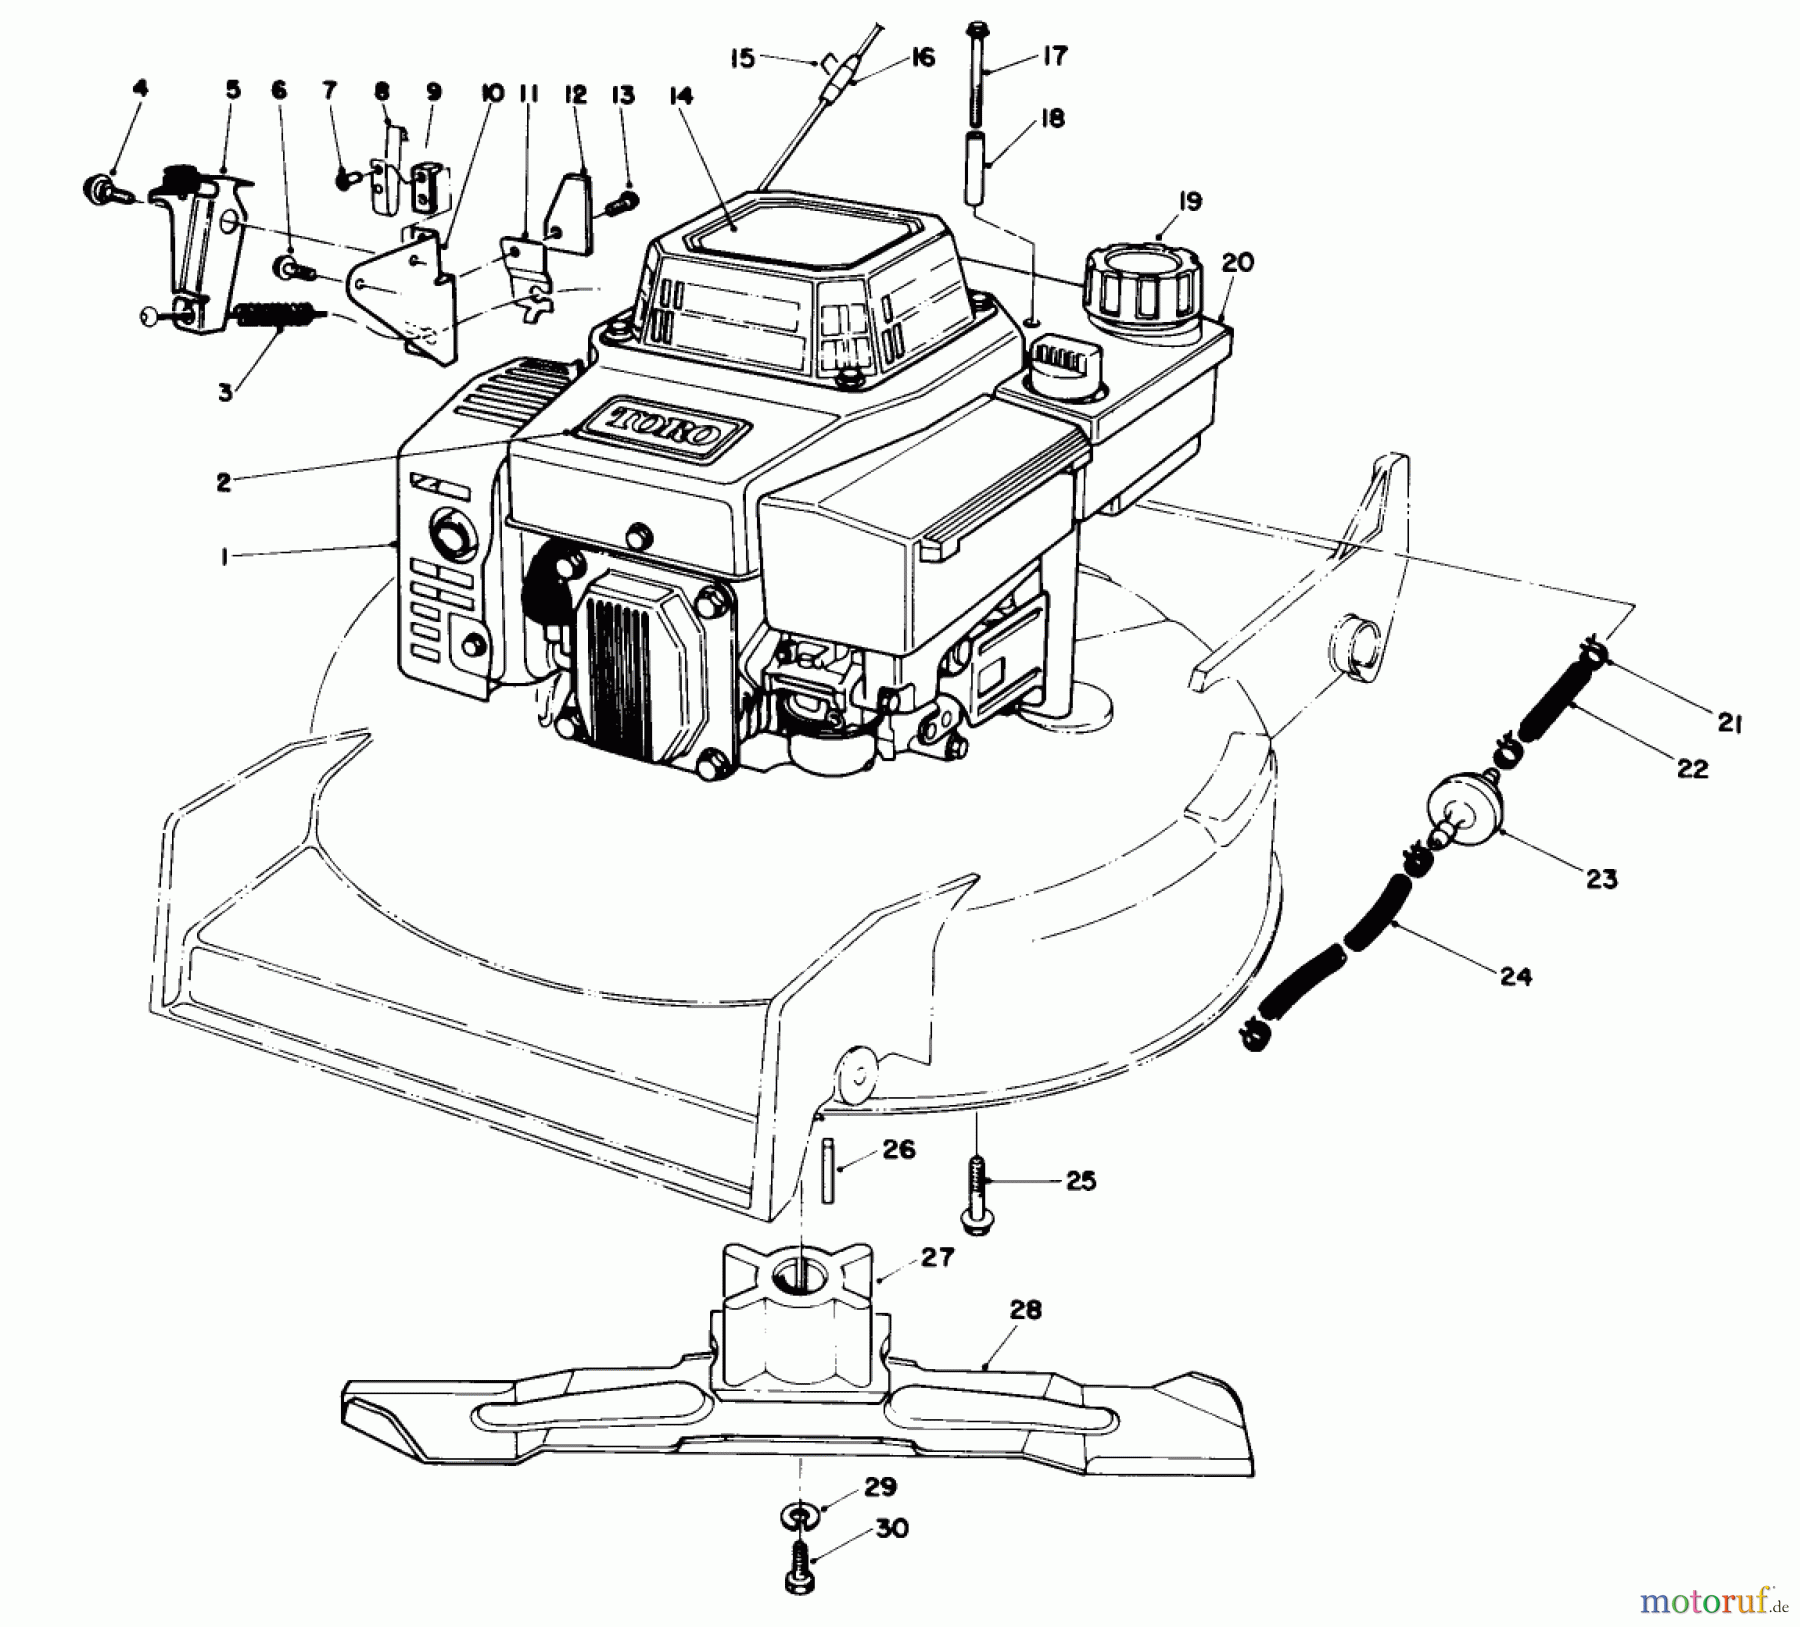  Toro Neu Mowers, Walk-Behind Seite 1 20526C - Toro Lawnmower, 1987 (7000001-7999999) ENGINE ASSEMBLY (MODEL NO. VMG6) #1